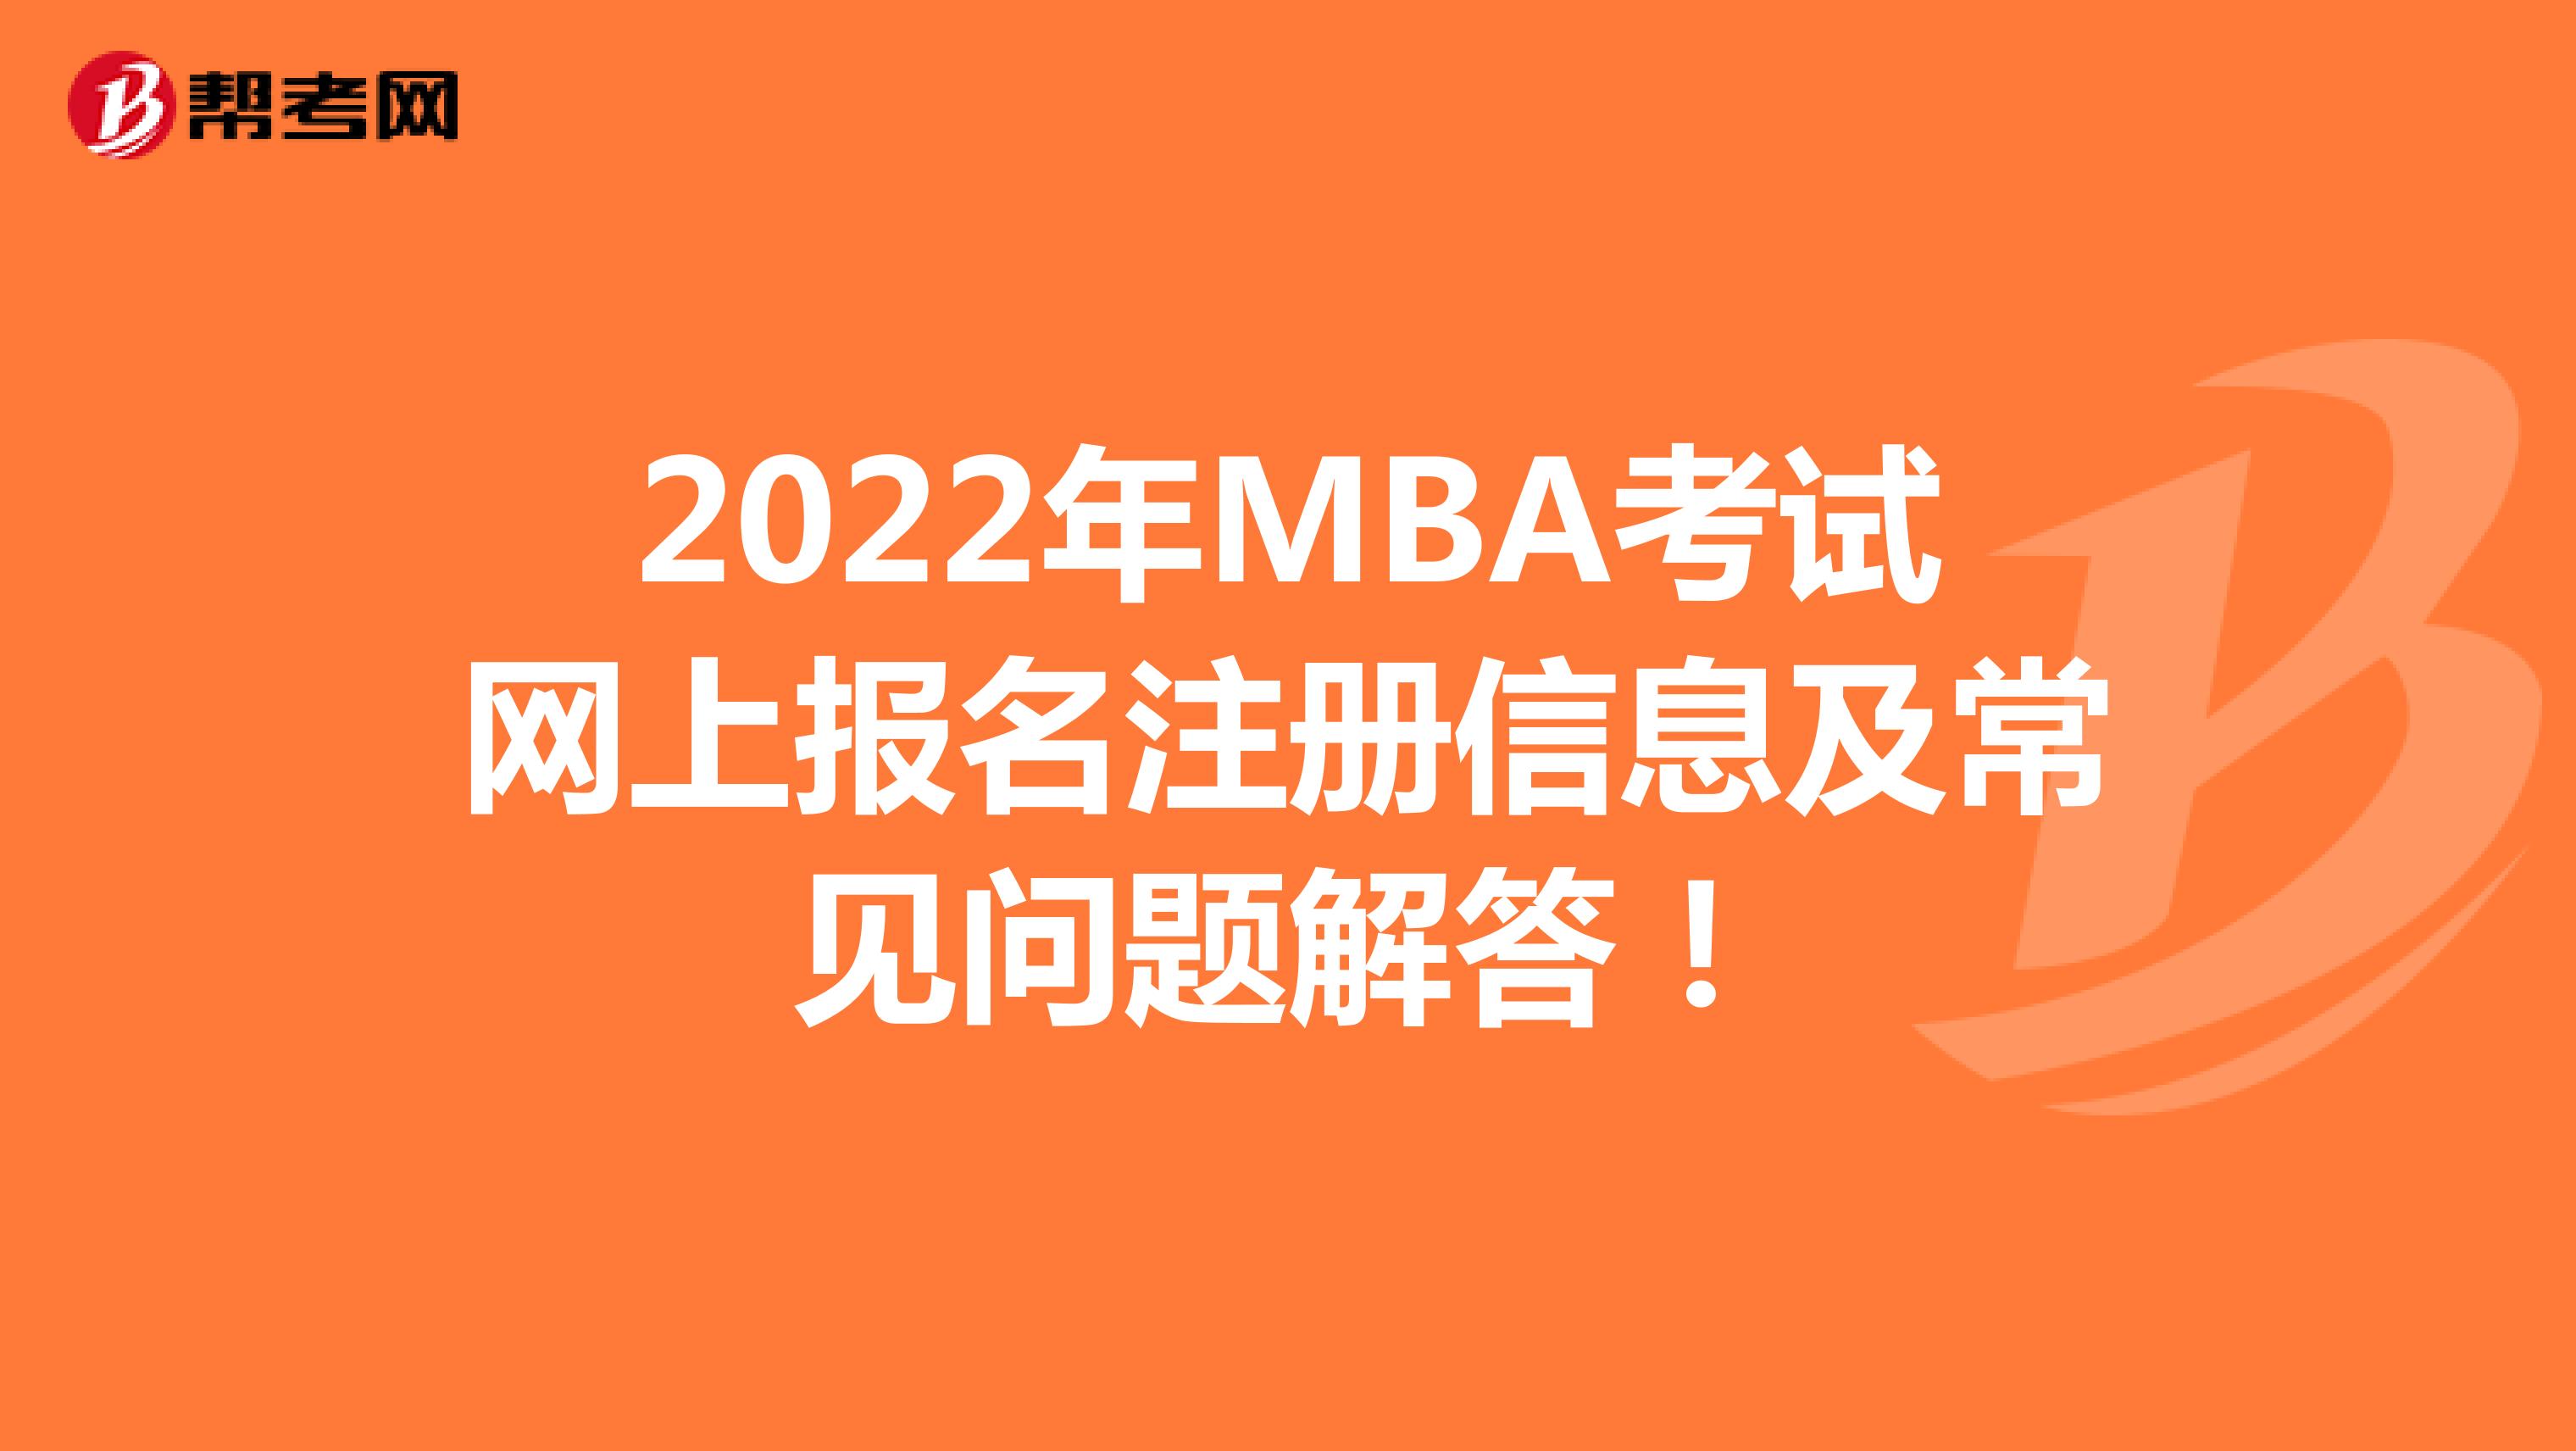 2022年MBA考试网上报名注册信息及常见问题解答！